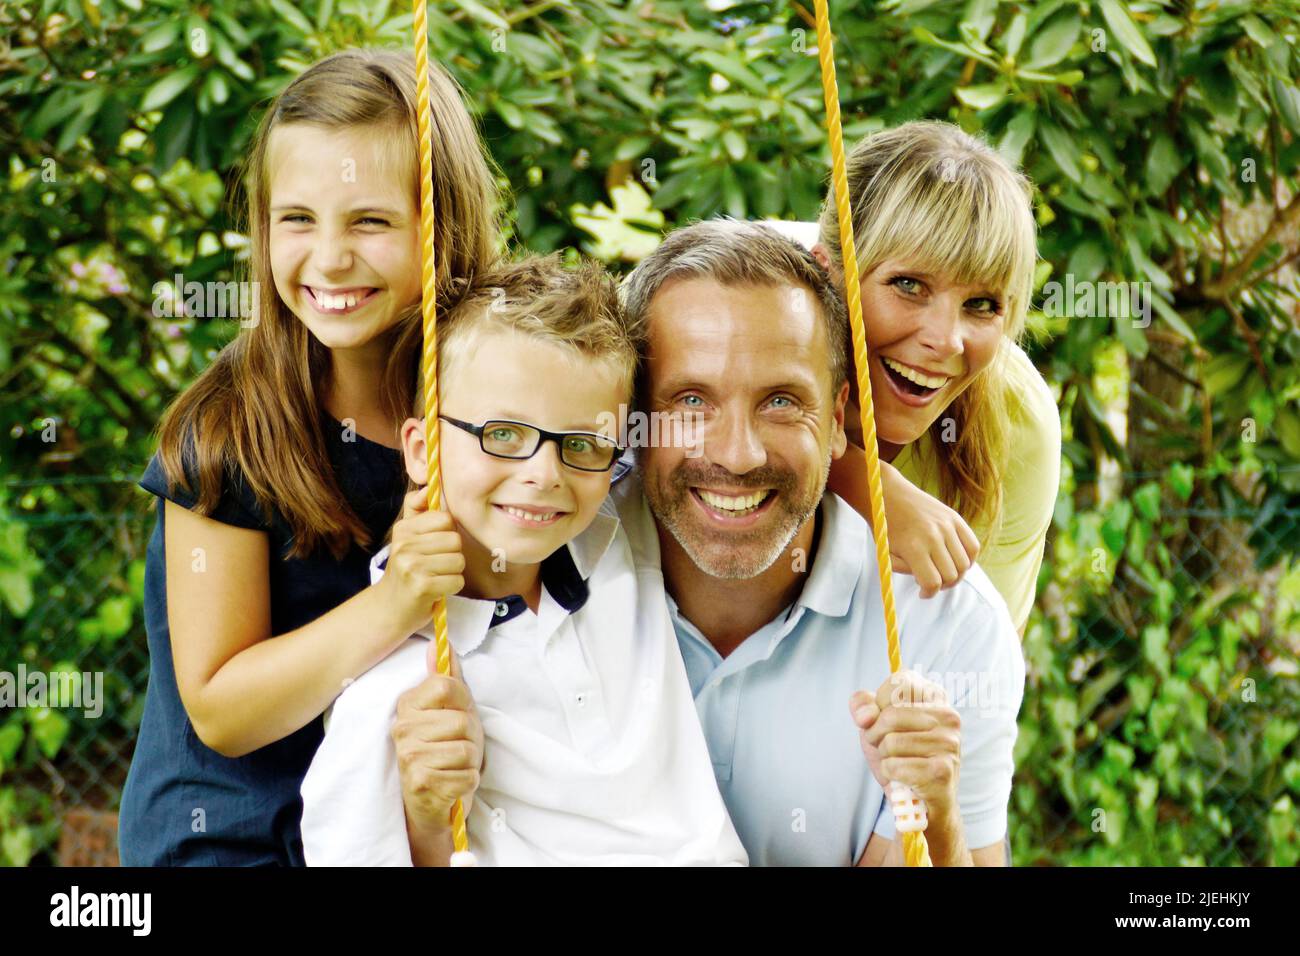 Vater und Mutter sowie zwei Kinder schaukeln im Garten Stock Photo